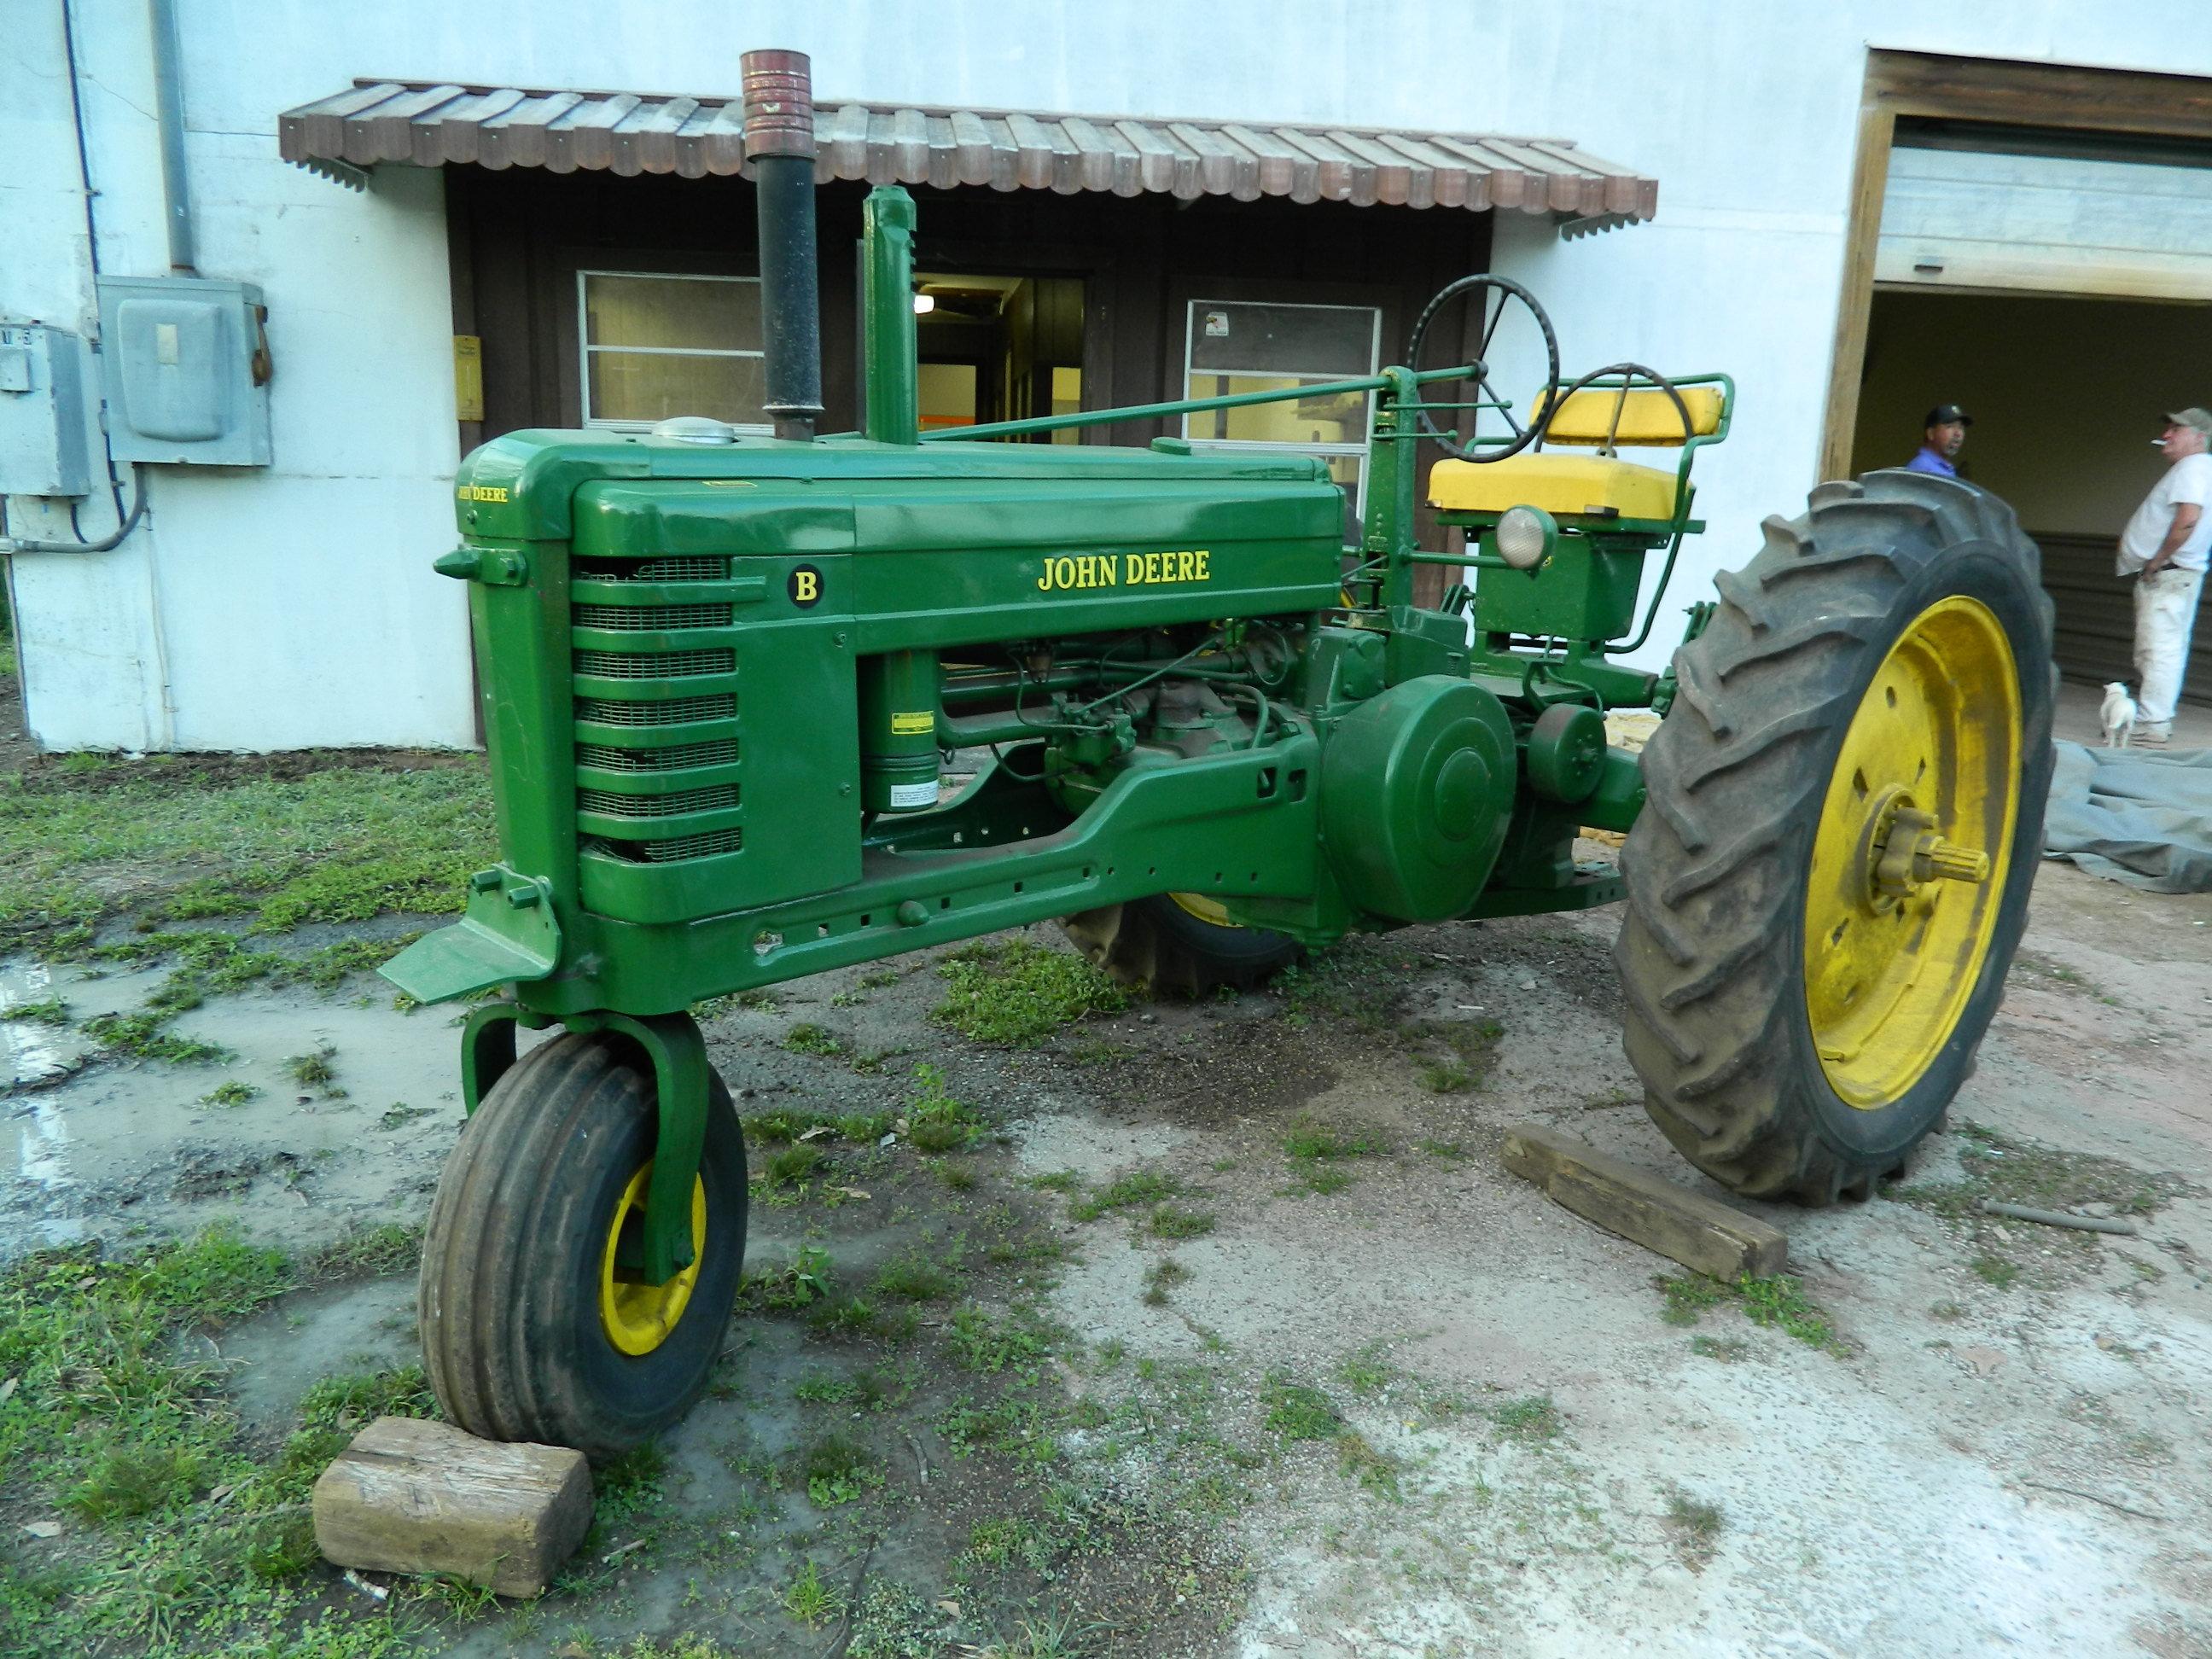 John Deere "B" Tractor, Buyer Must Arrange Own Shipping